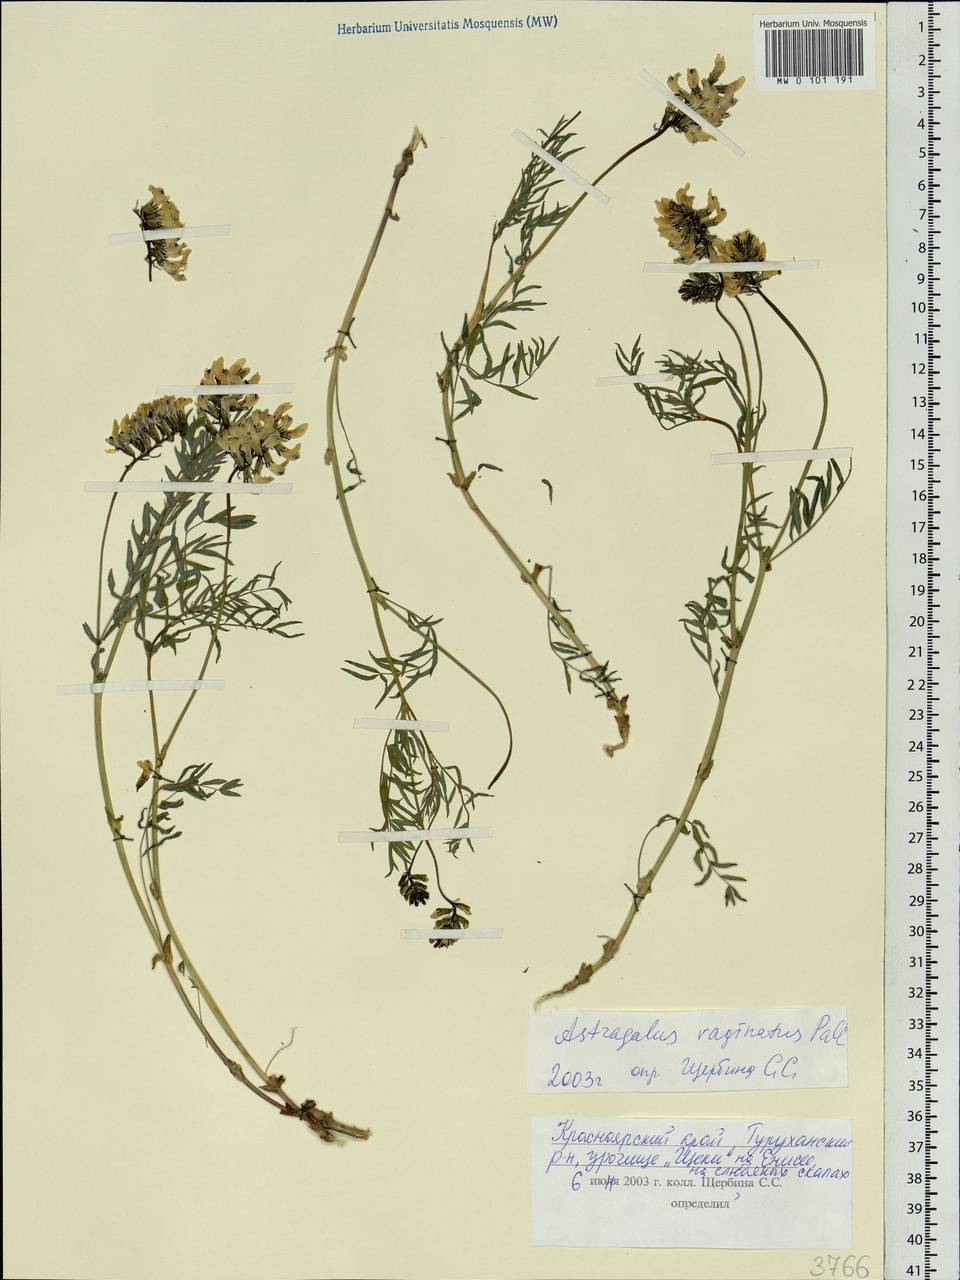 Astragalus vaginatus Pall., Siberia, Central Siberia (S3) (Russia)